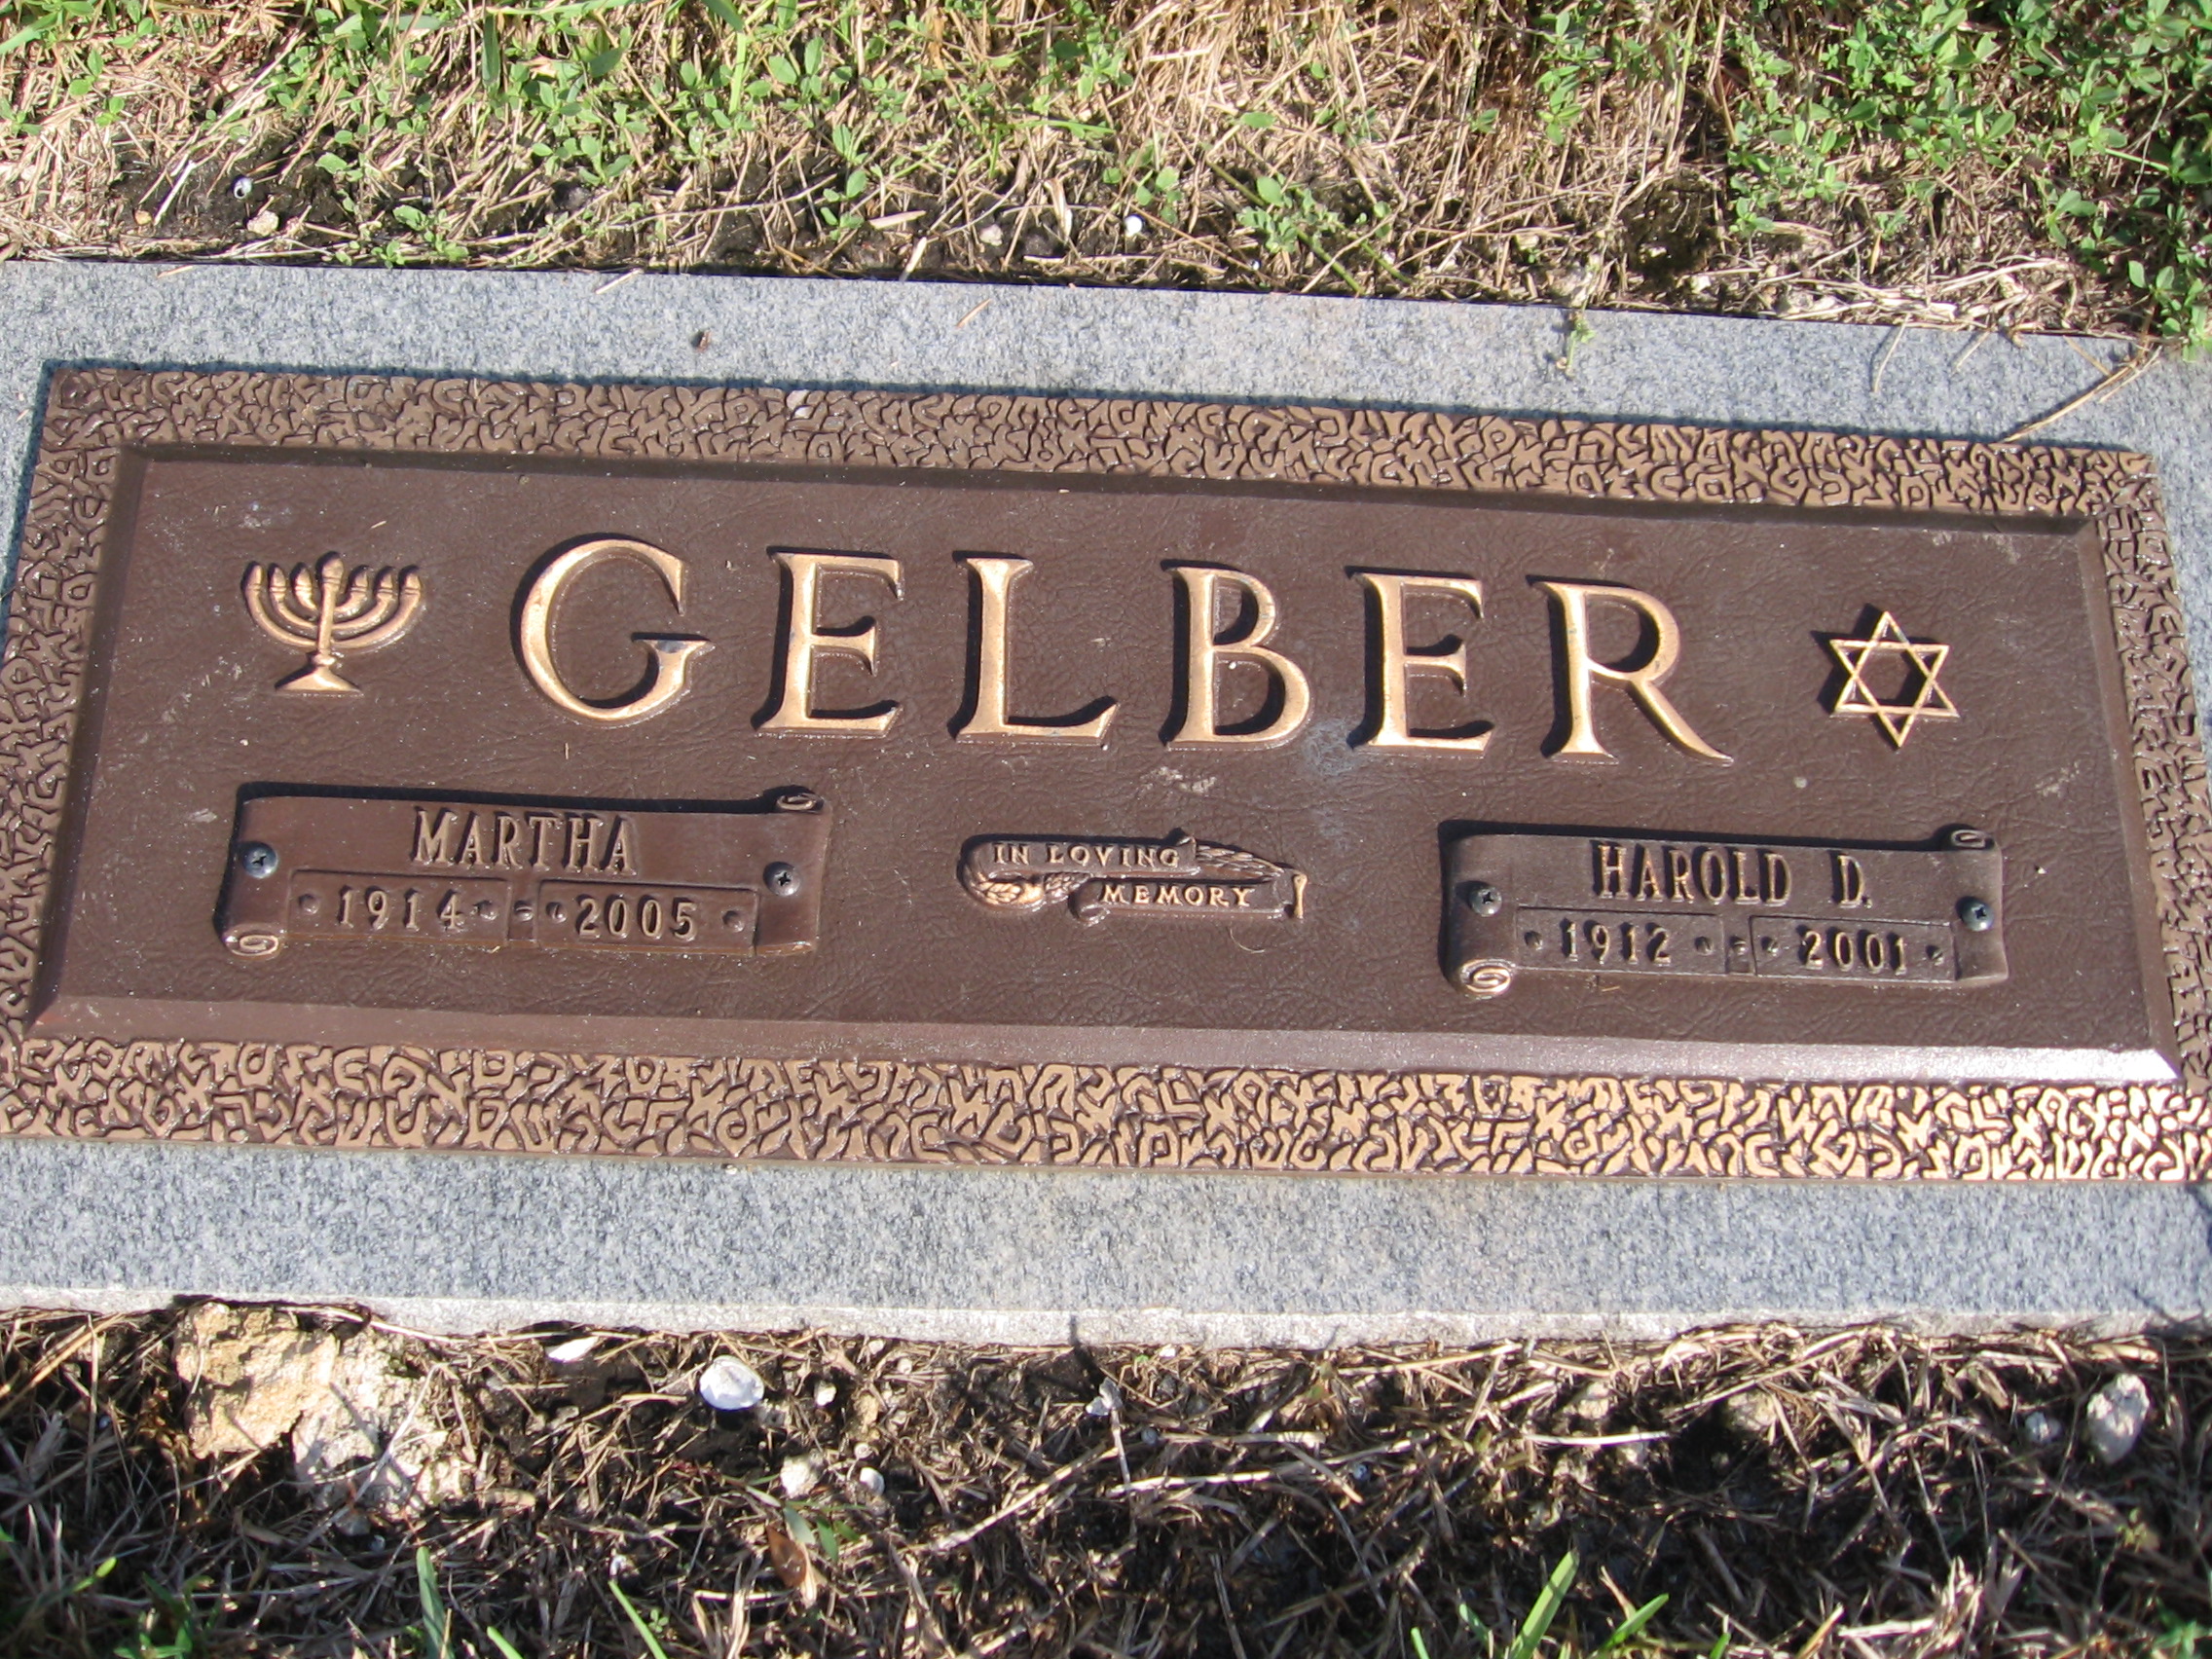 Harold D Gelber